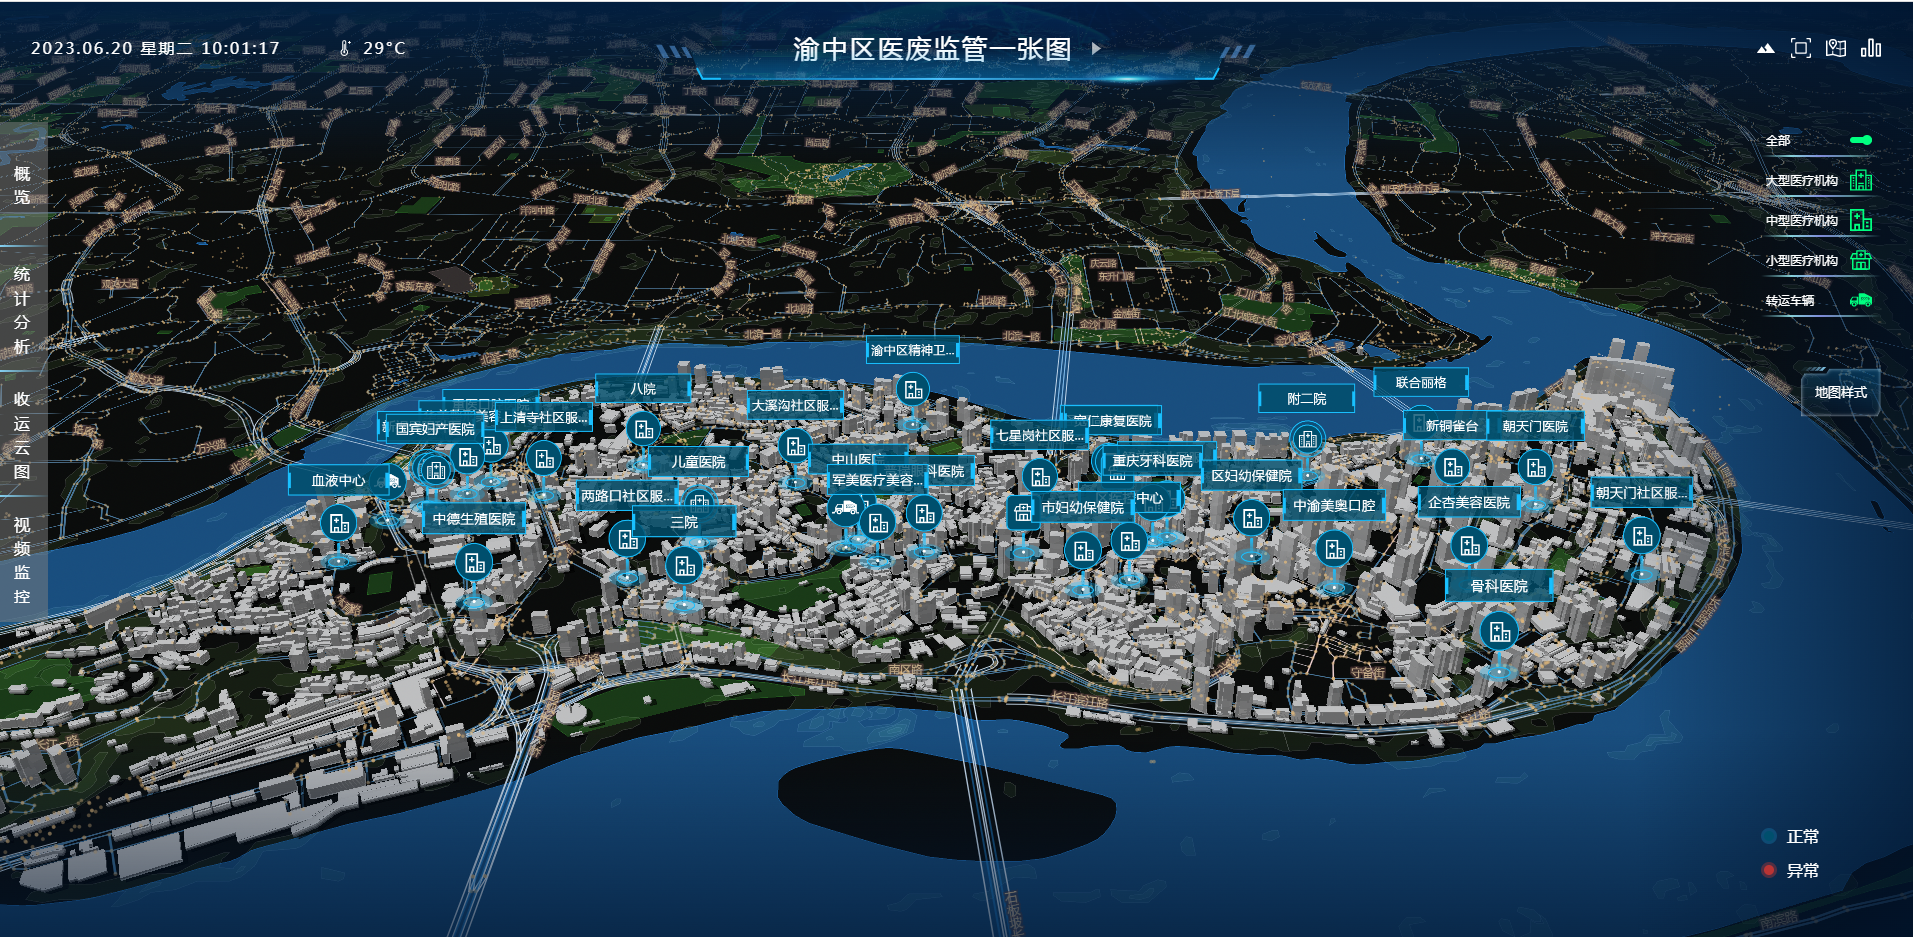 重庆渝中区枇杷山规划图片